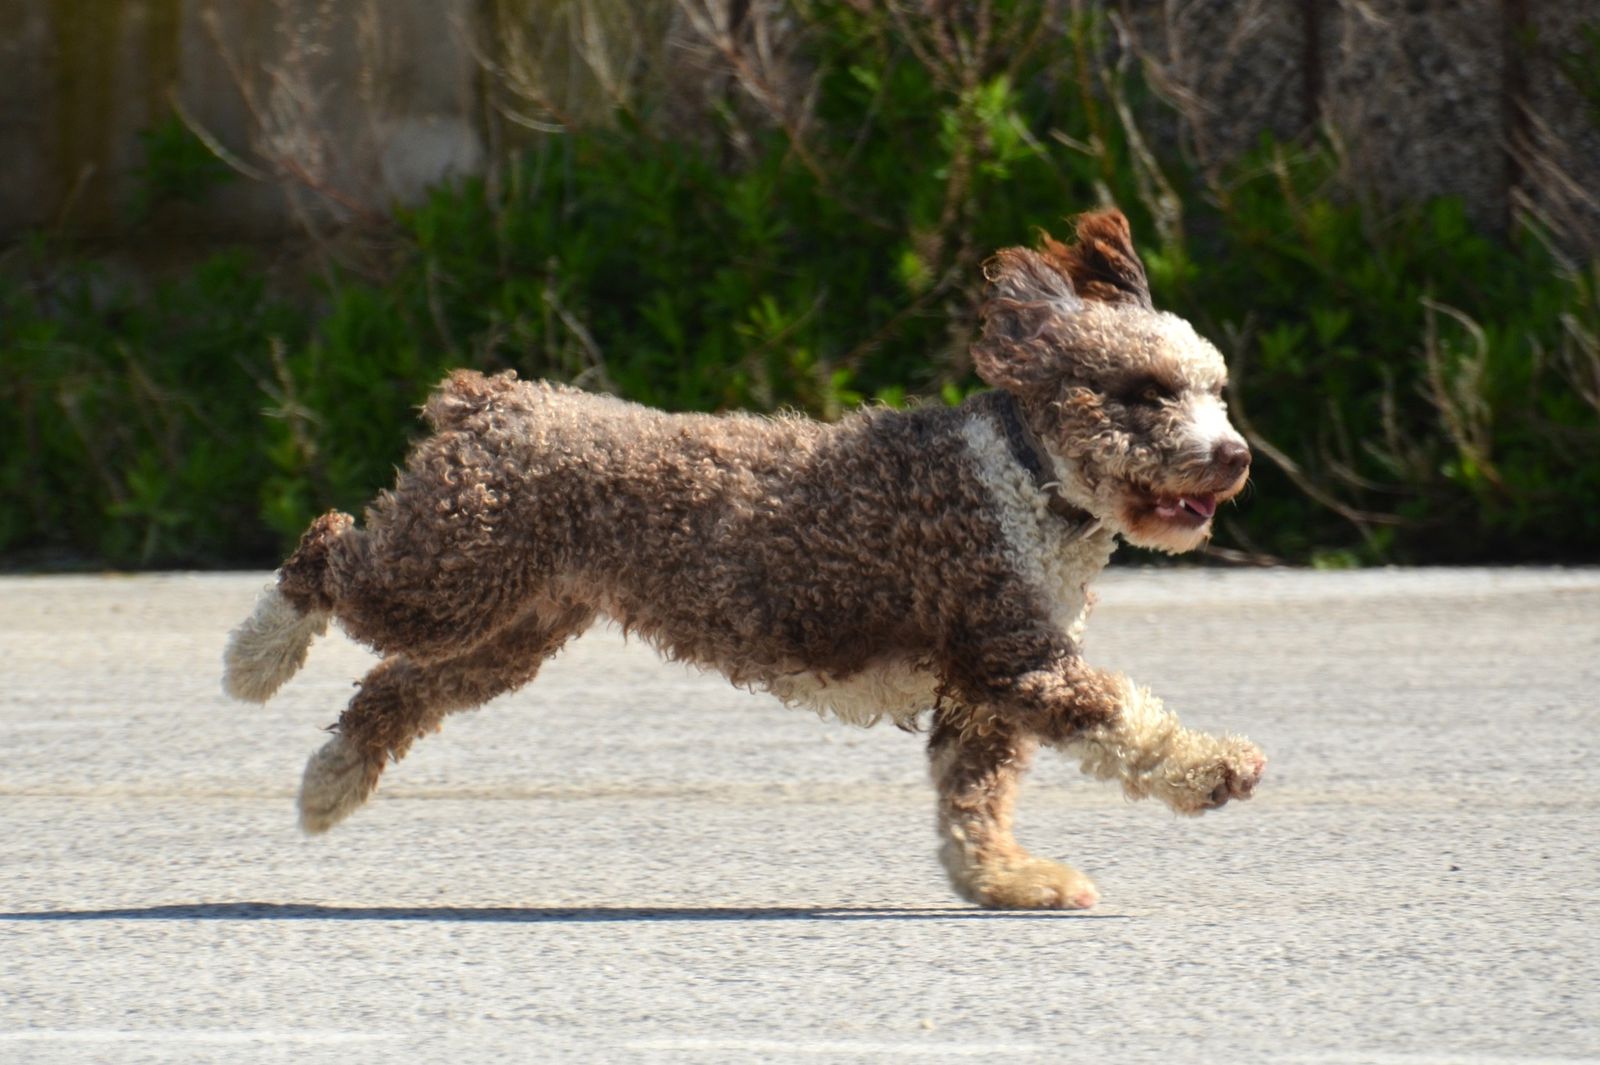 Ein grau-weiß-gelockter Hund läuft im seitlichen Profil auf dem Asphalt